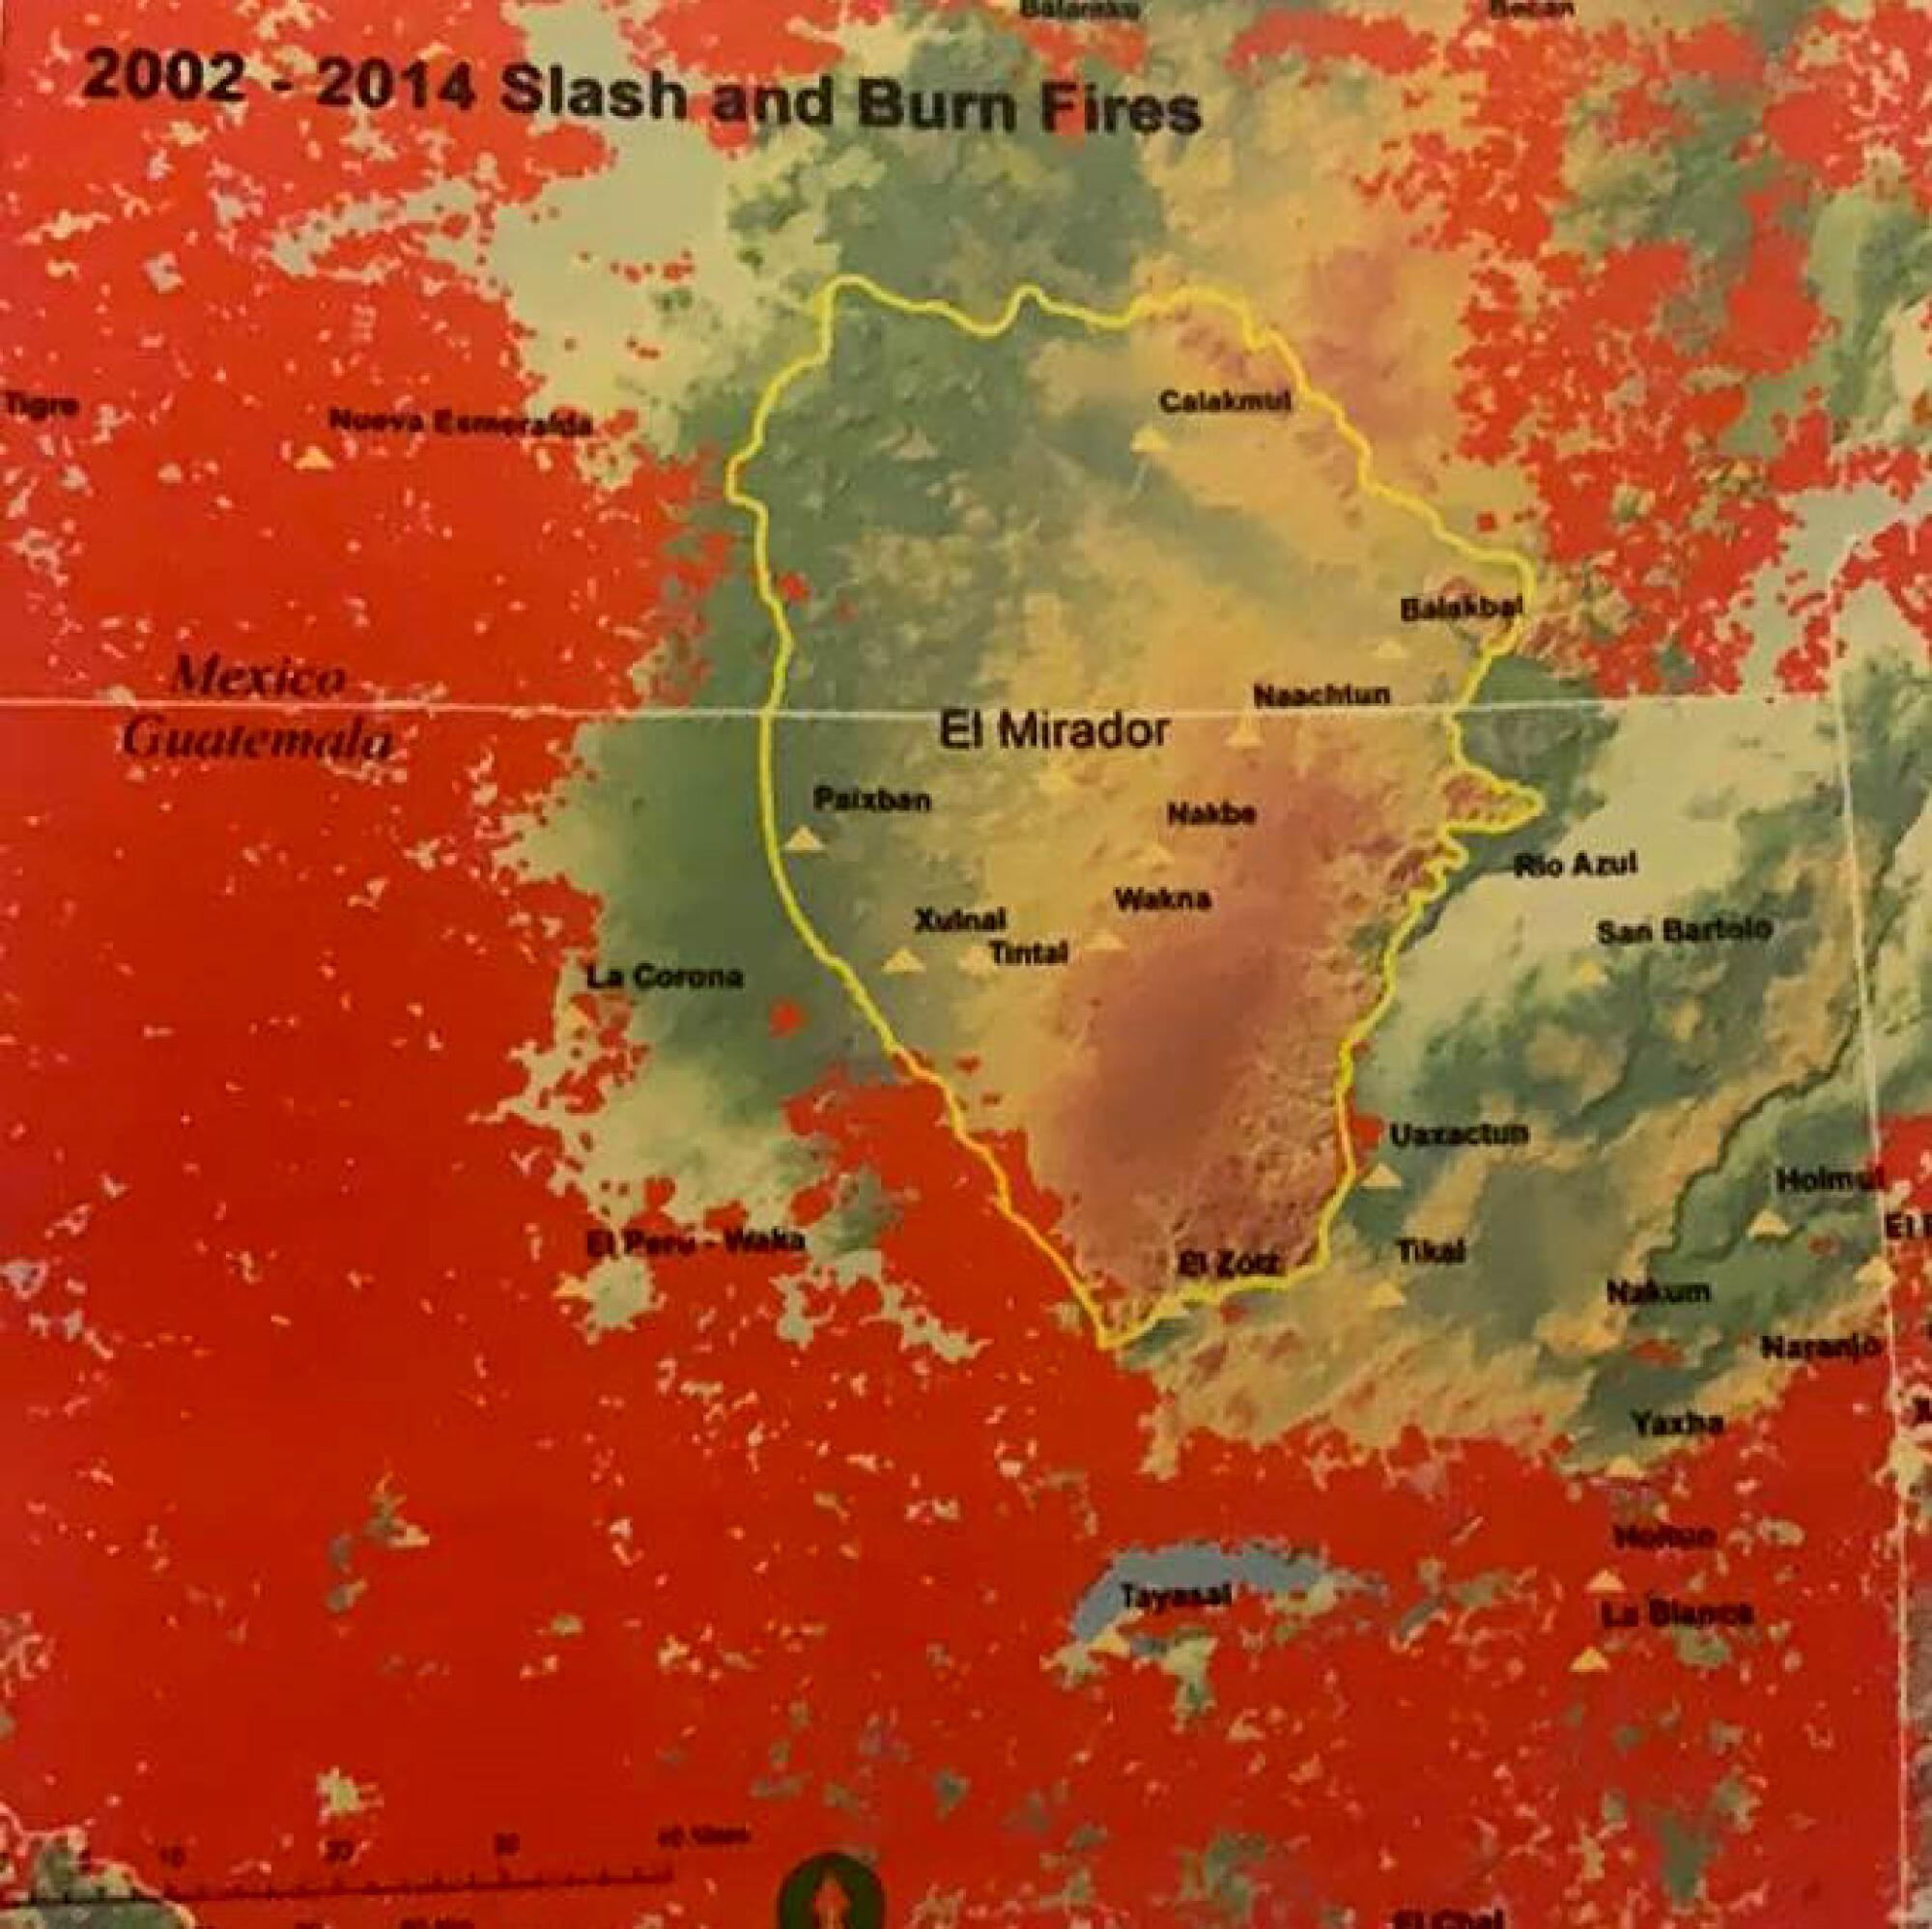 Los puntos rojos son áreas que a lo largo de los años han sido afectadas